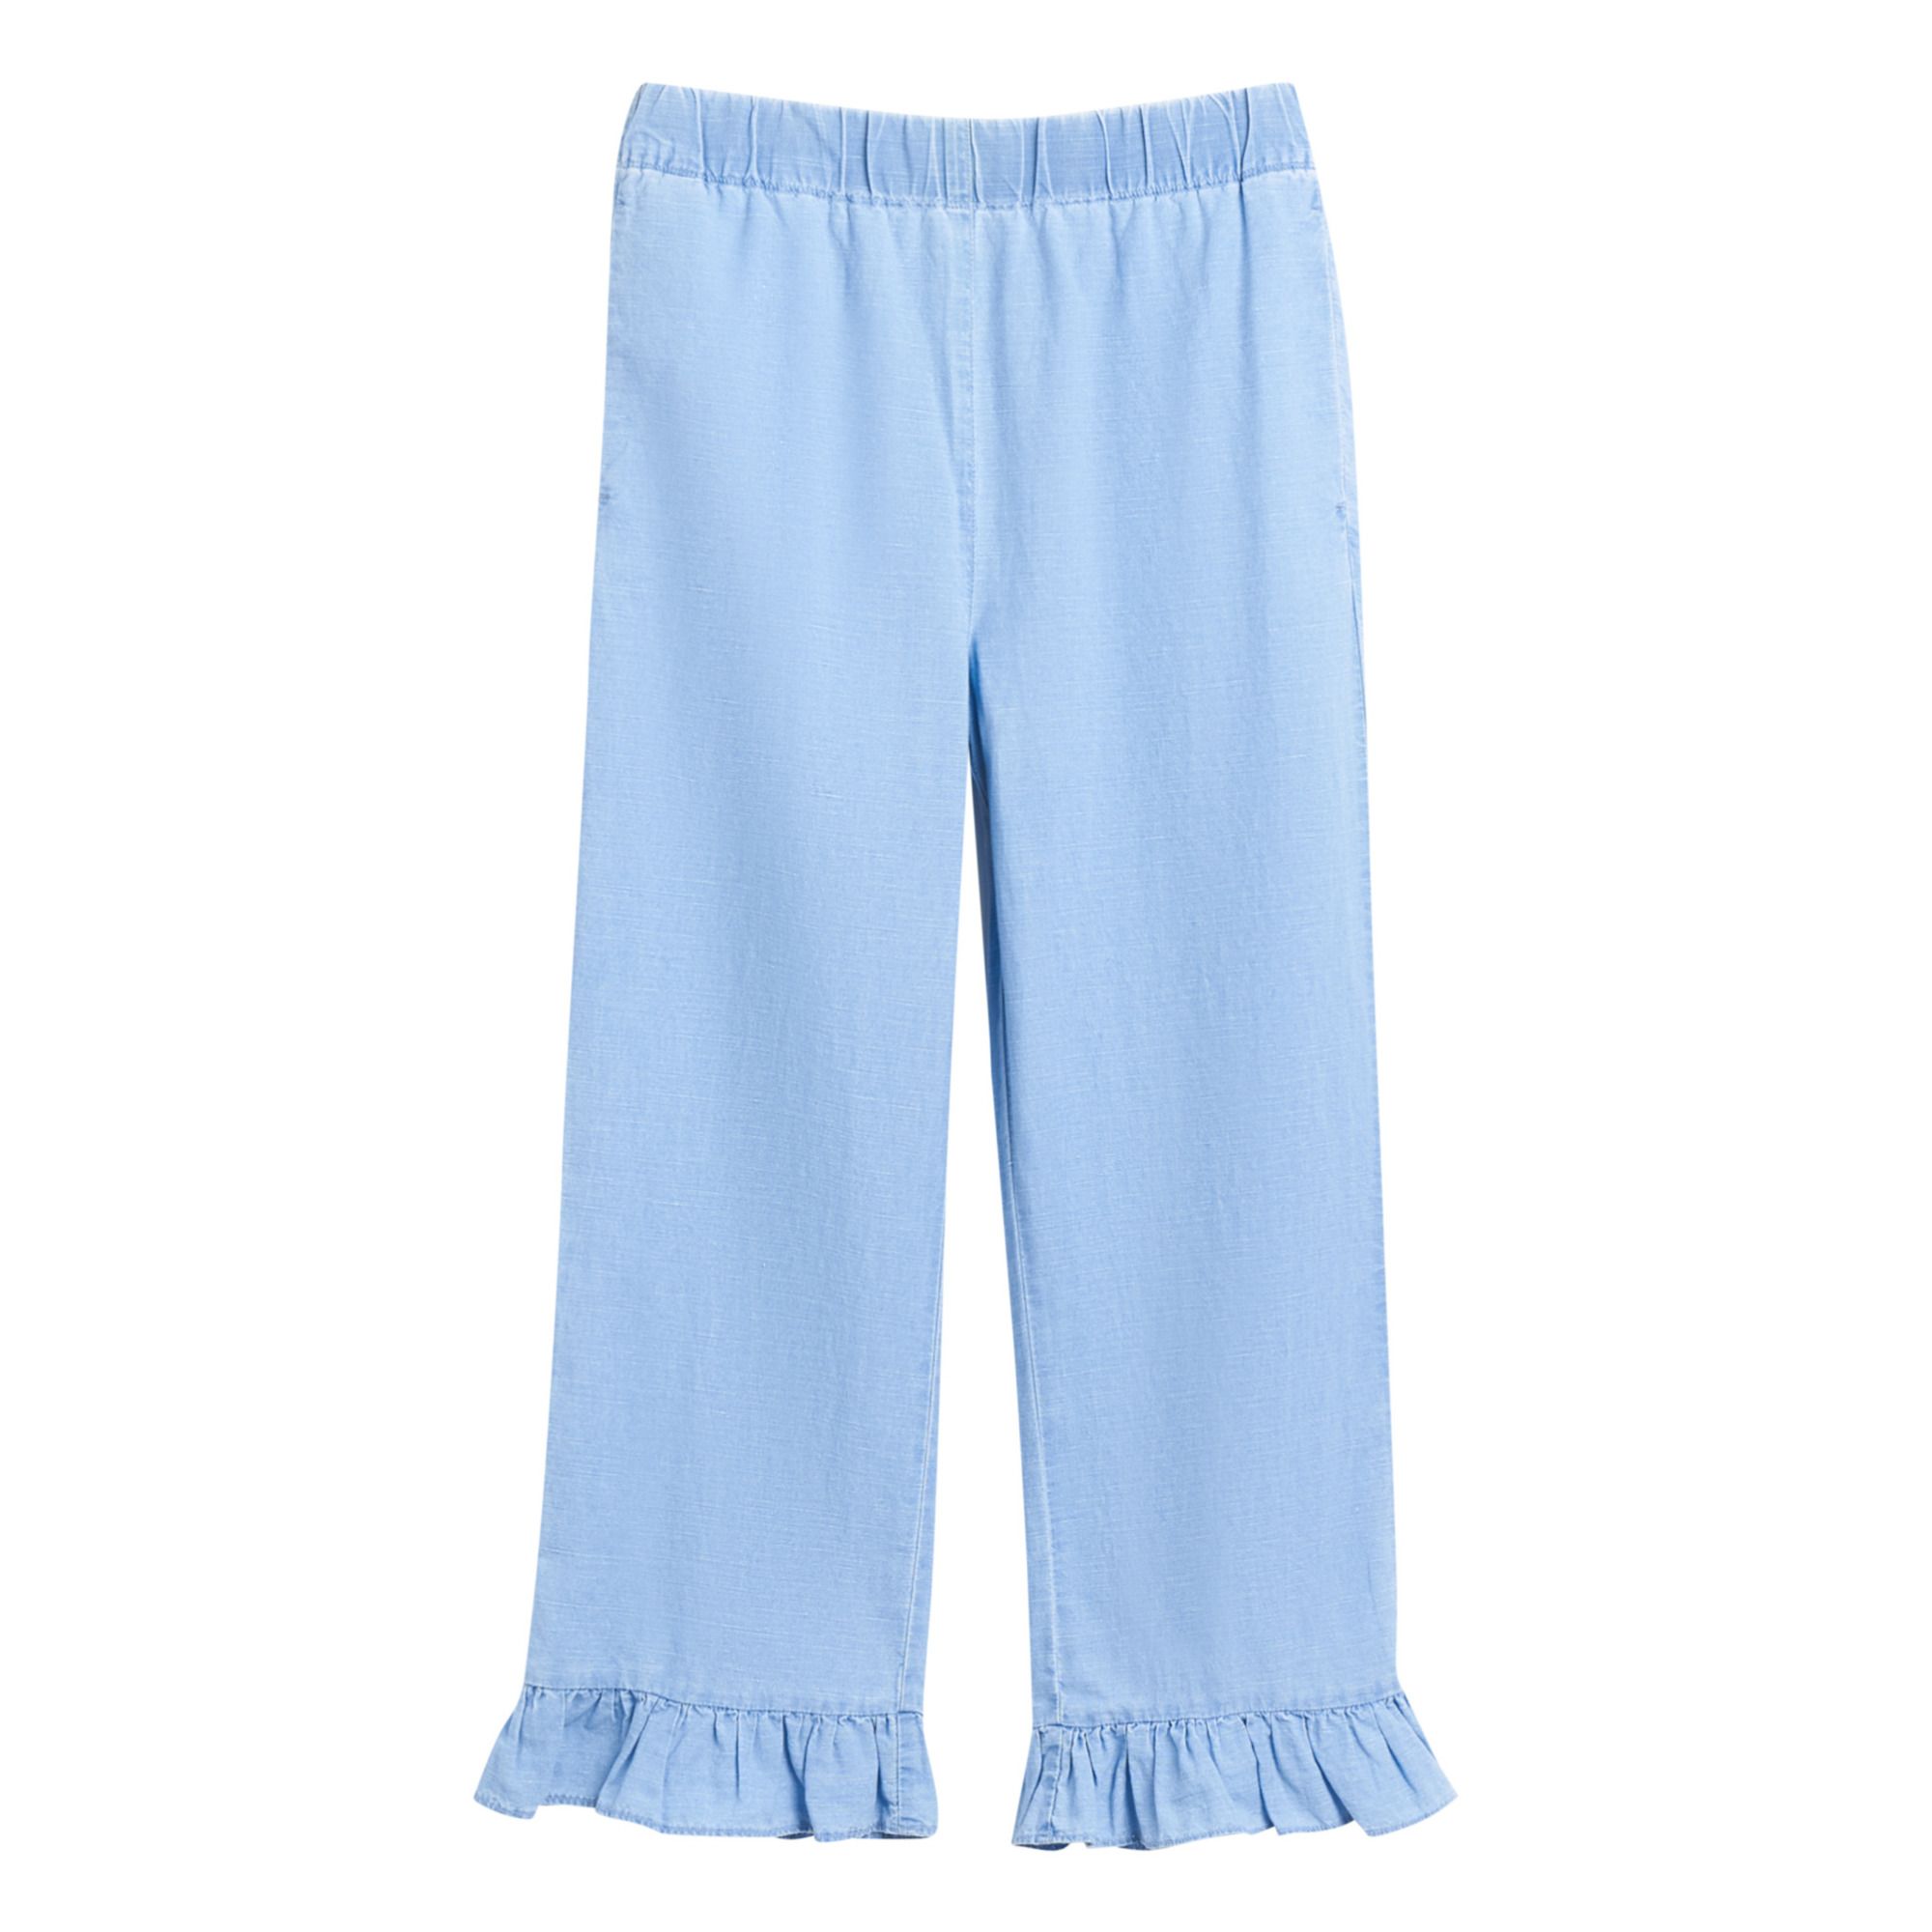 Bellerose - Pantalon Azura - Fille - Bleu pÃ¢le